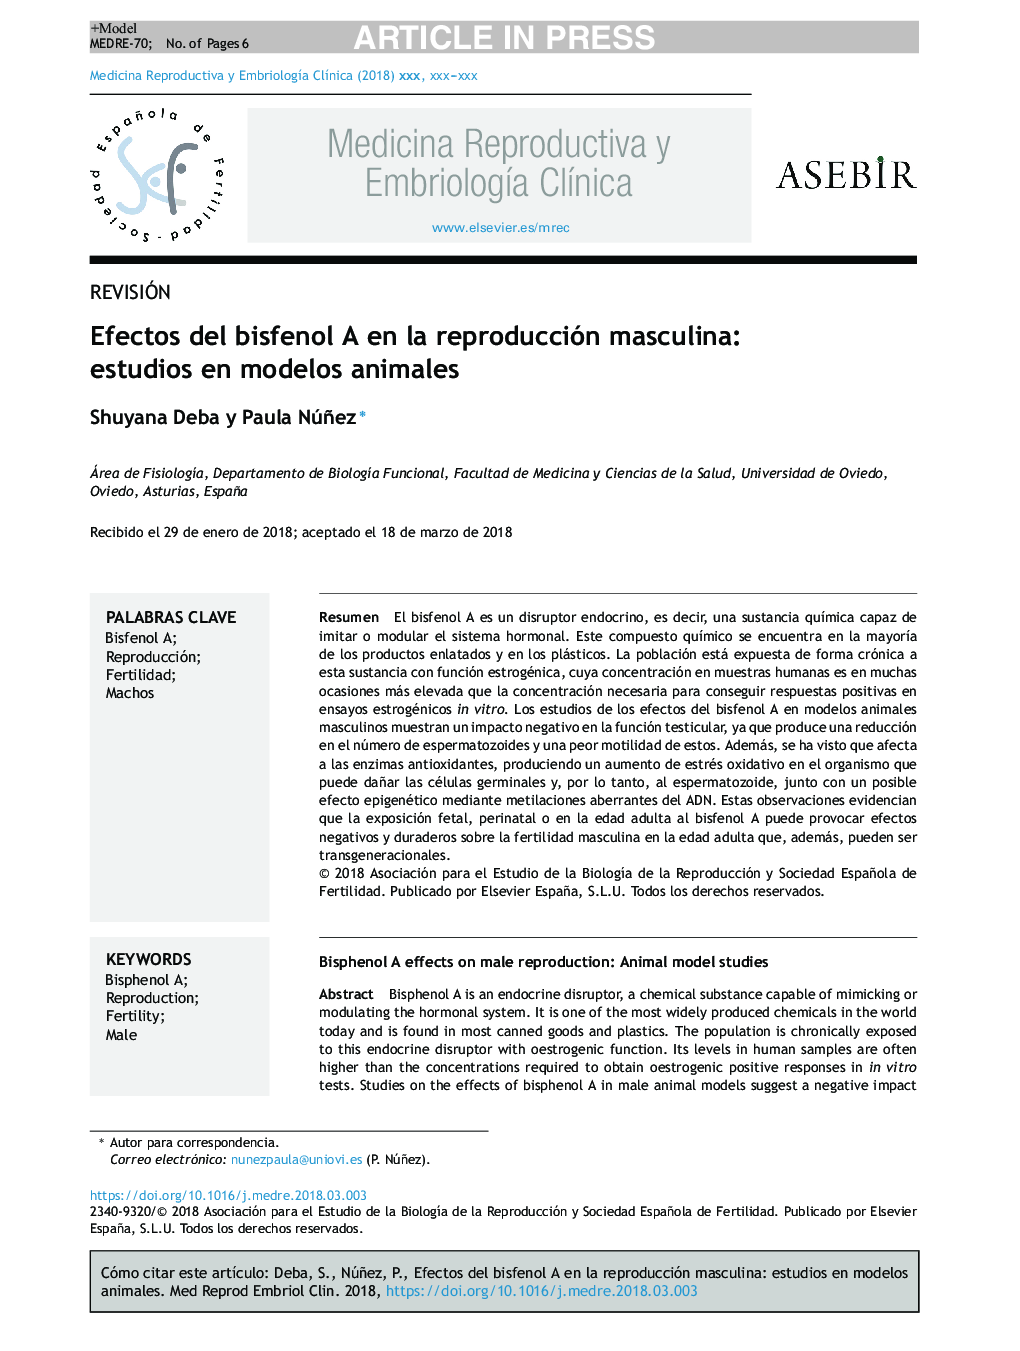 Efectos del bisfenol A en la reproducción masculina: estudios en modelos animales